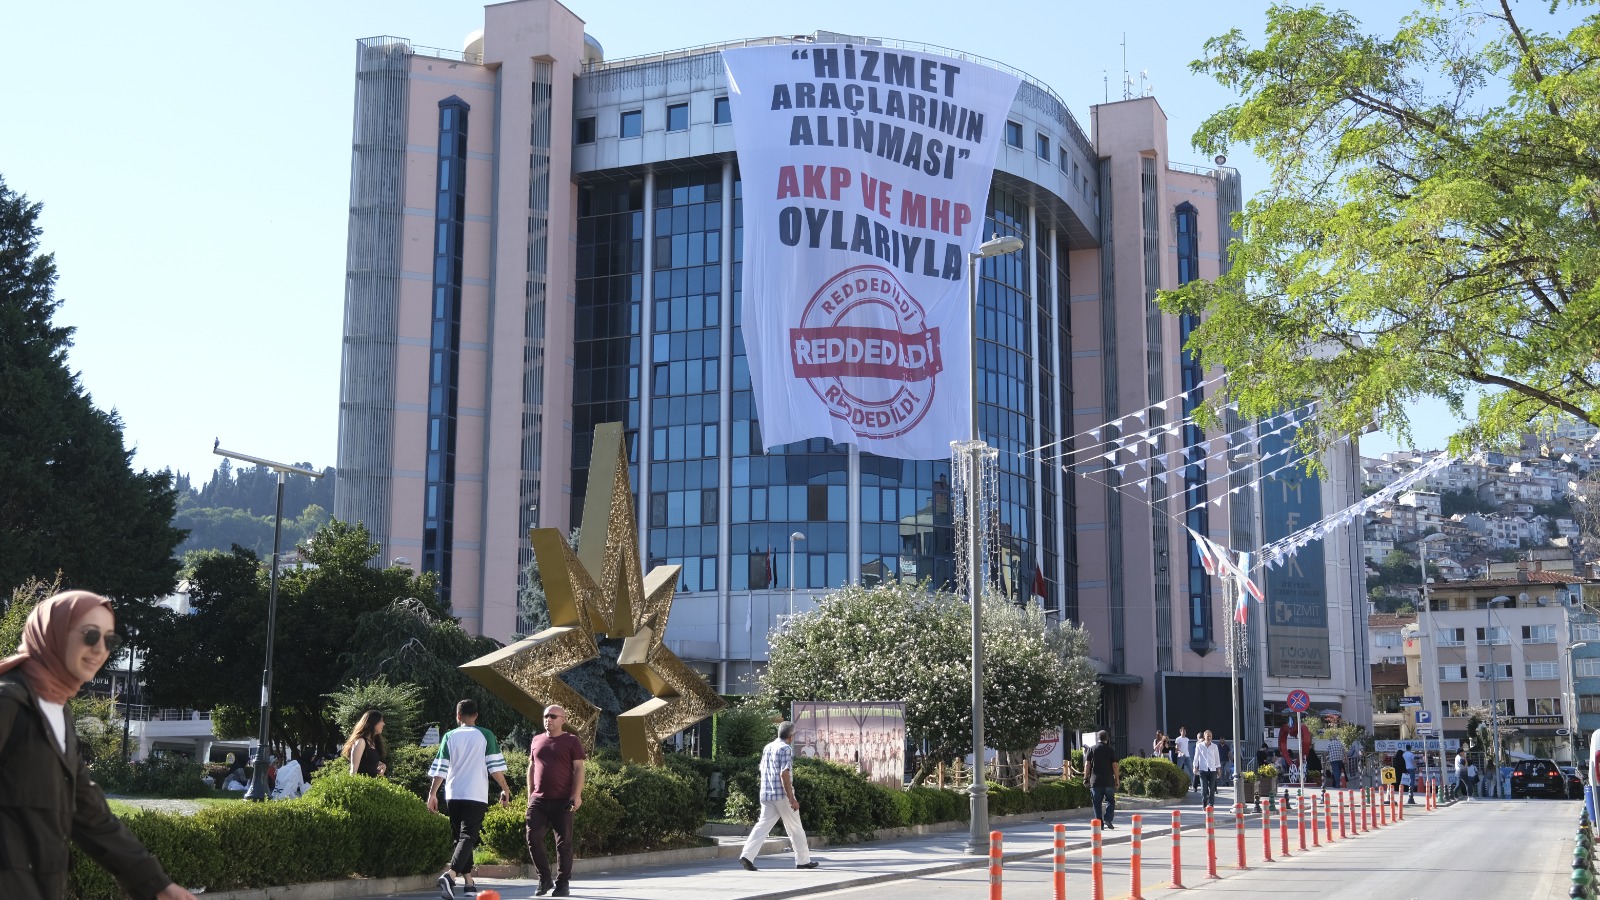 AKP ve MHP’li Meclis üyelerini Bilboardlarla halka şikayet etti